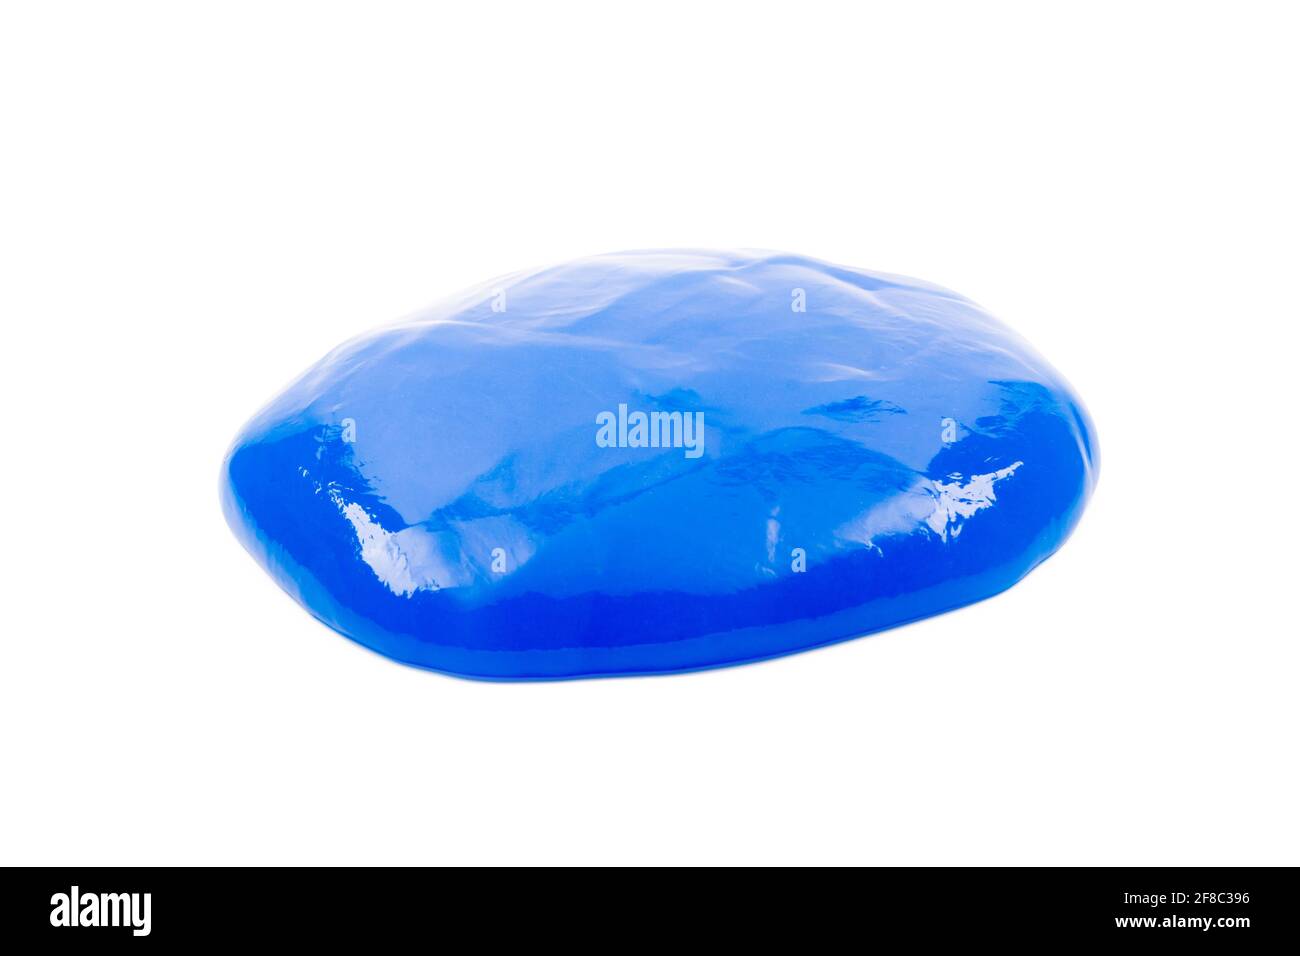 Blauer Schleim isoliert auf Weiß mit Beschneidungspfad Stockfotografie -  Alamy